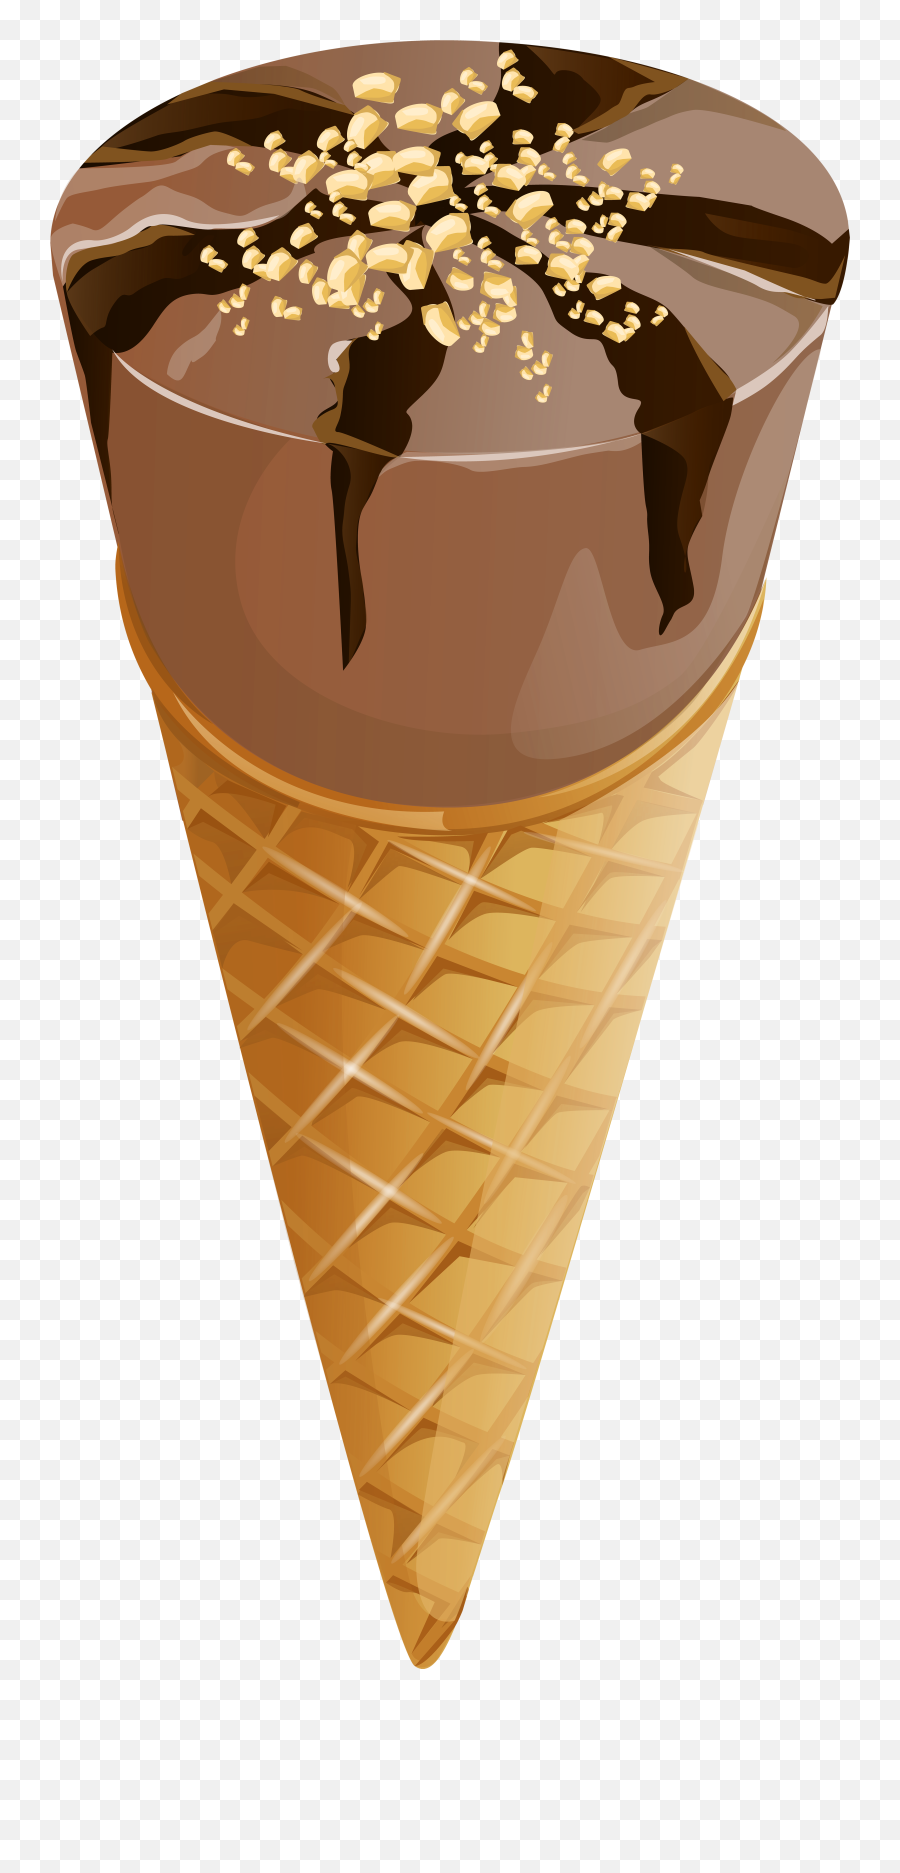 Dog Clipart Ice Cream Dog Ice Cream Transparent Free For - Chocolate Transparent Background Ice Cream Emoji,Ice Cream Clipart